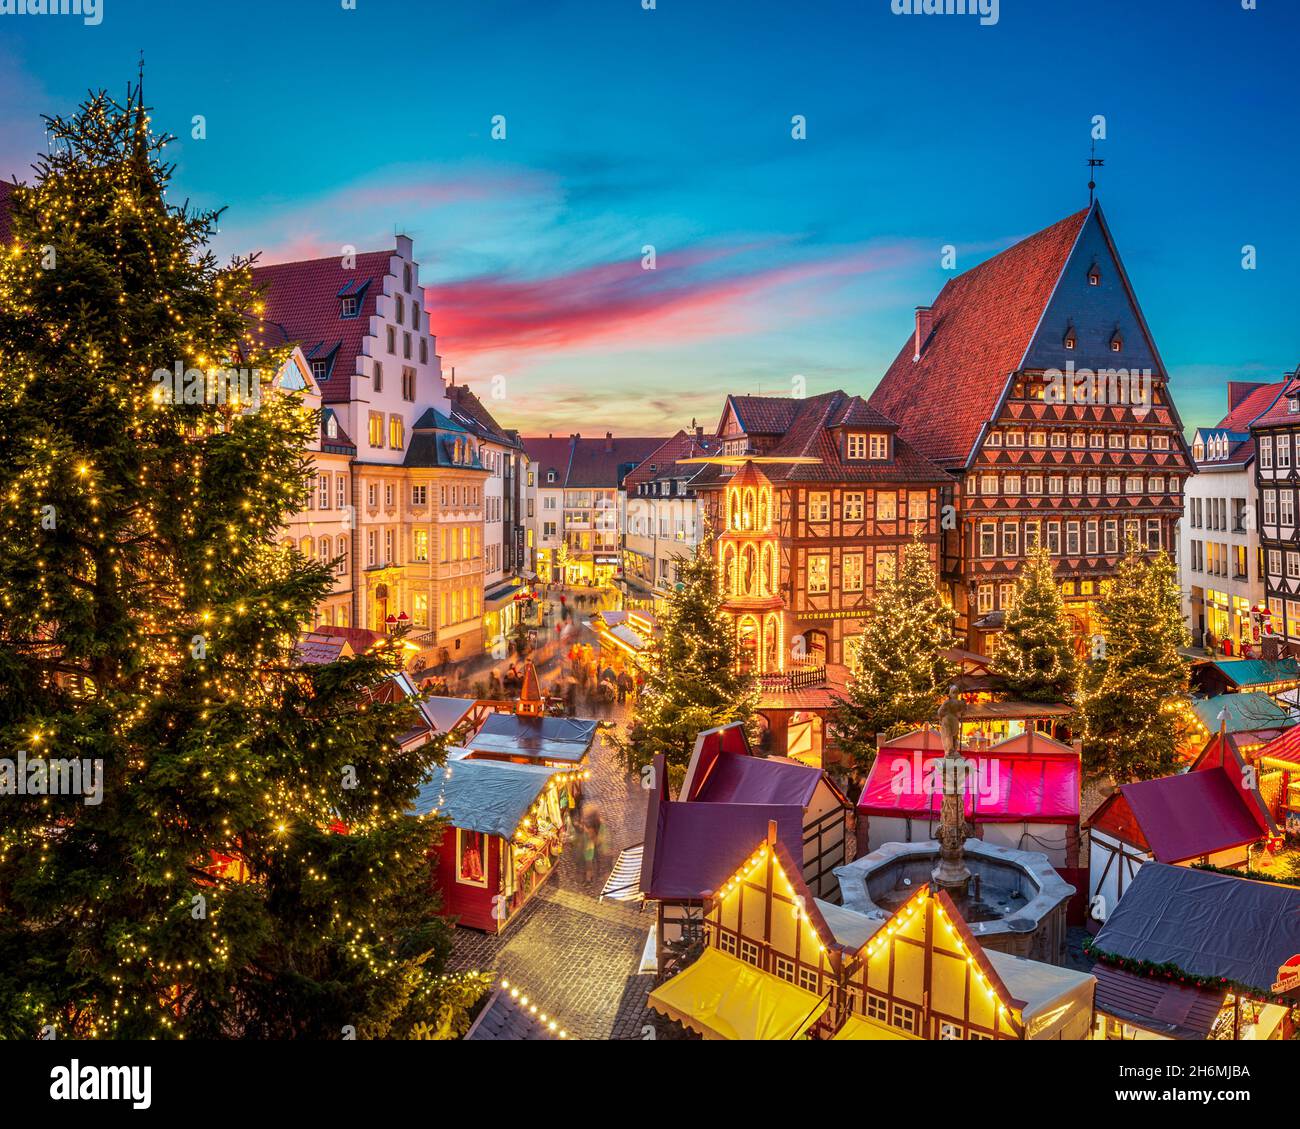 Marché de Noël sur le marché historique de Hildesheim, Allemagne Banque D'Images